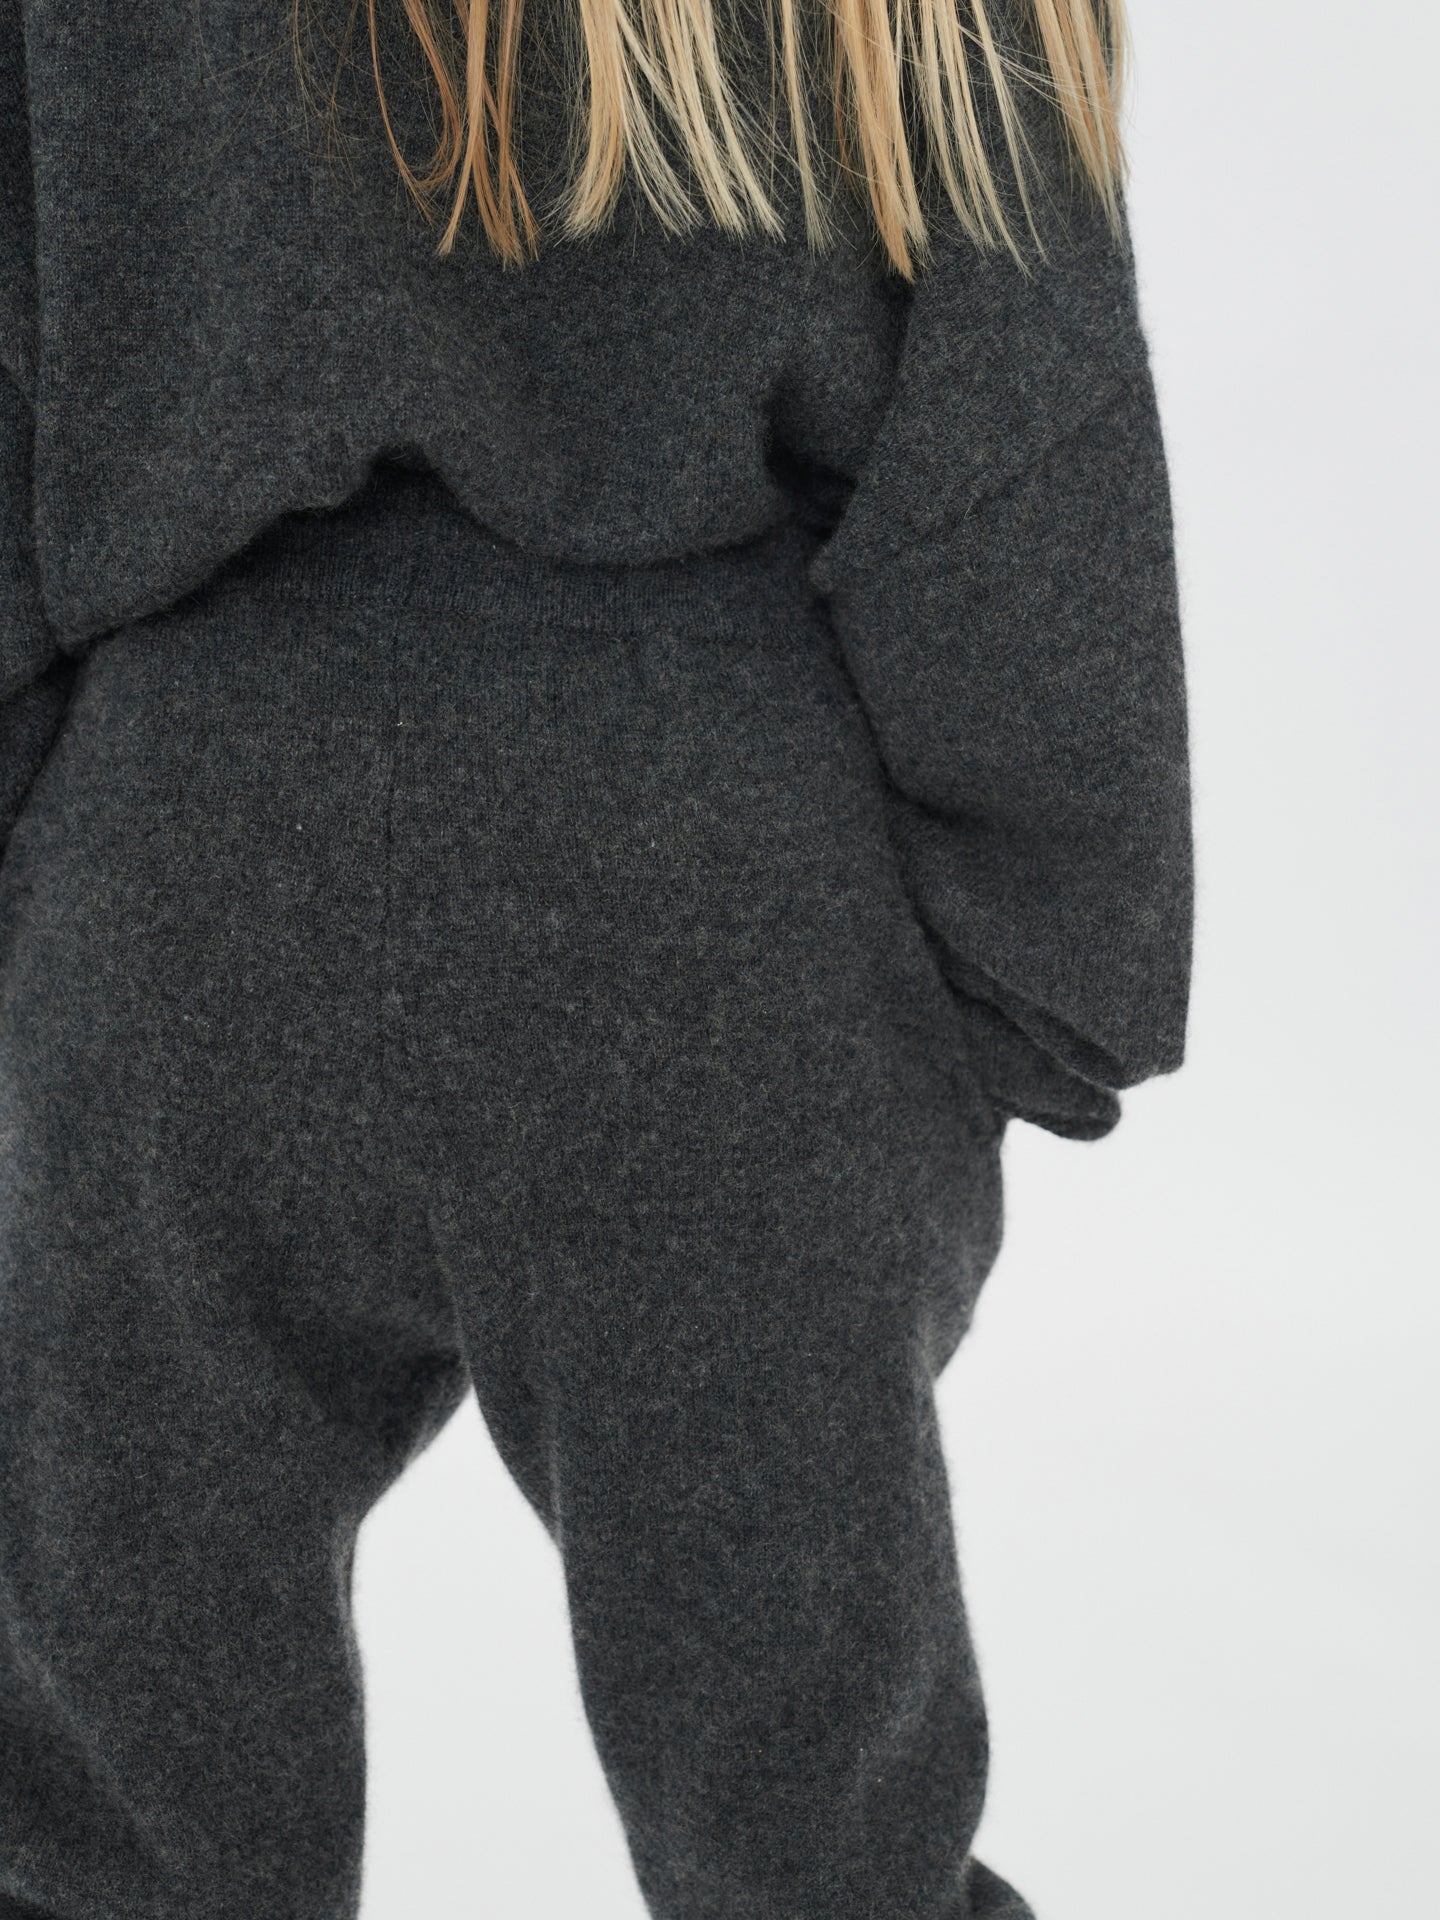 Pantalon Cachemire pour enfants gris - Gobi Cashmere